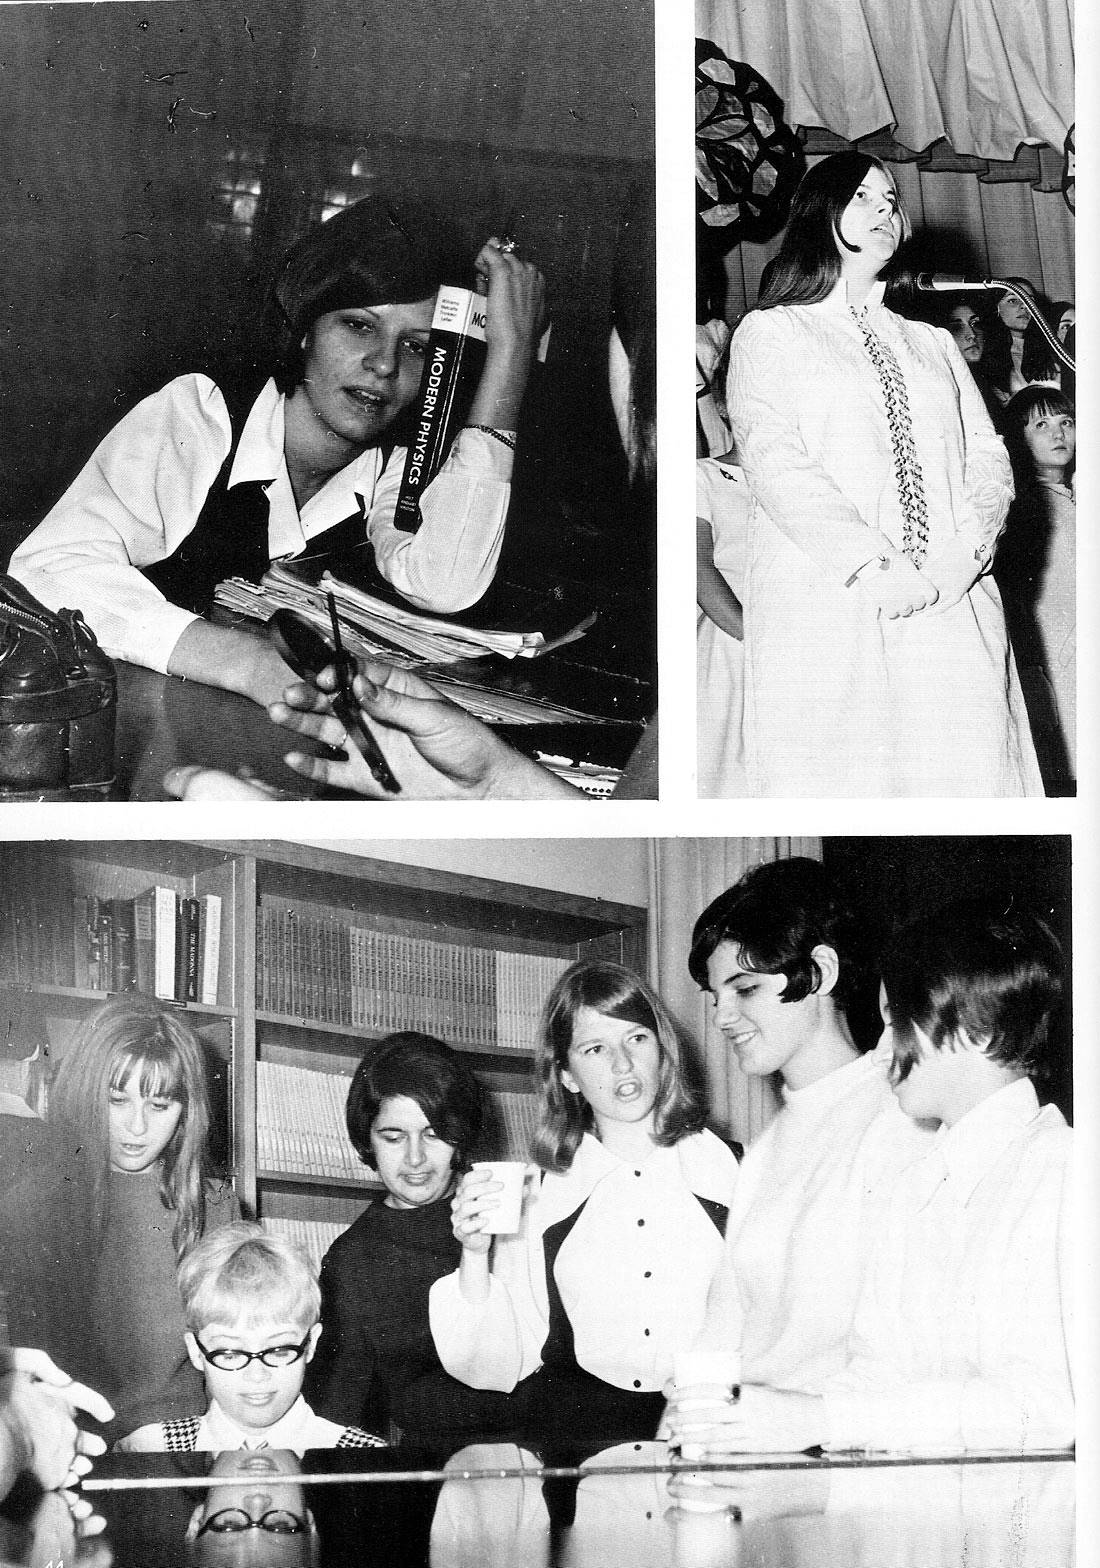 Elizabeth Seton High School Class of 1969